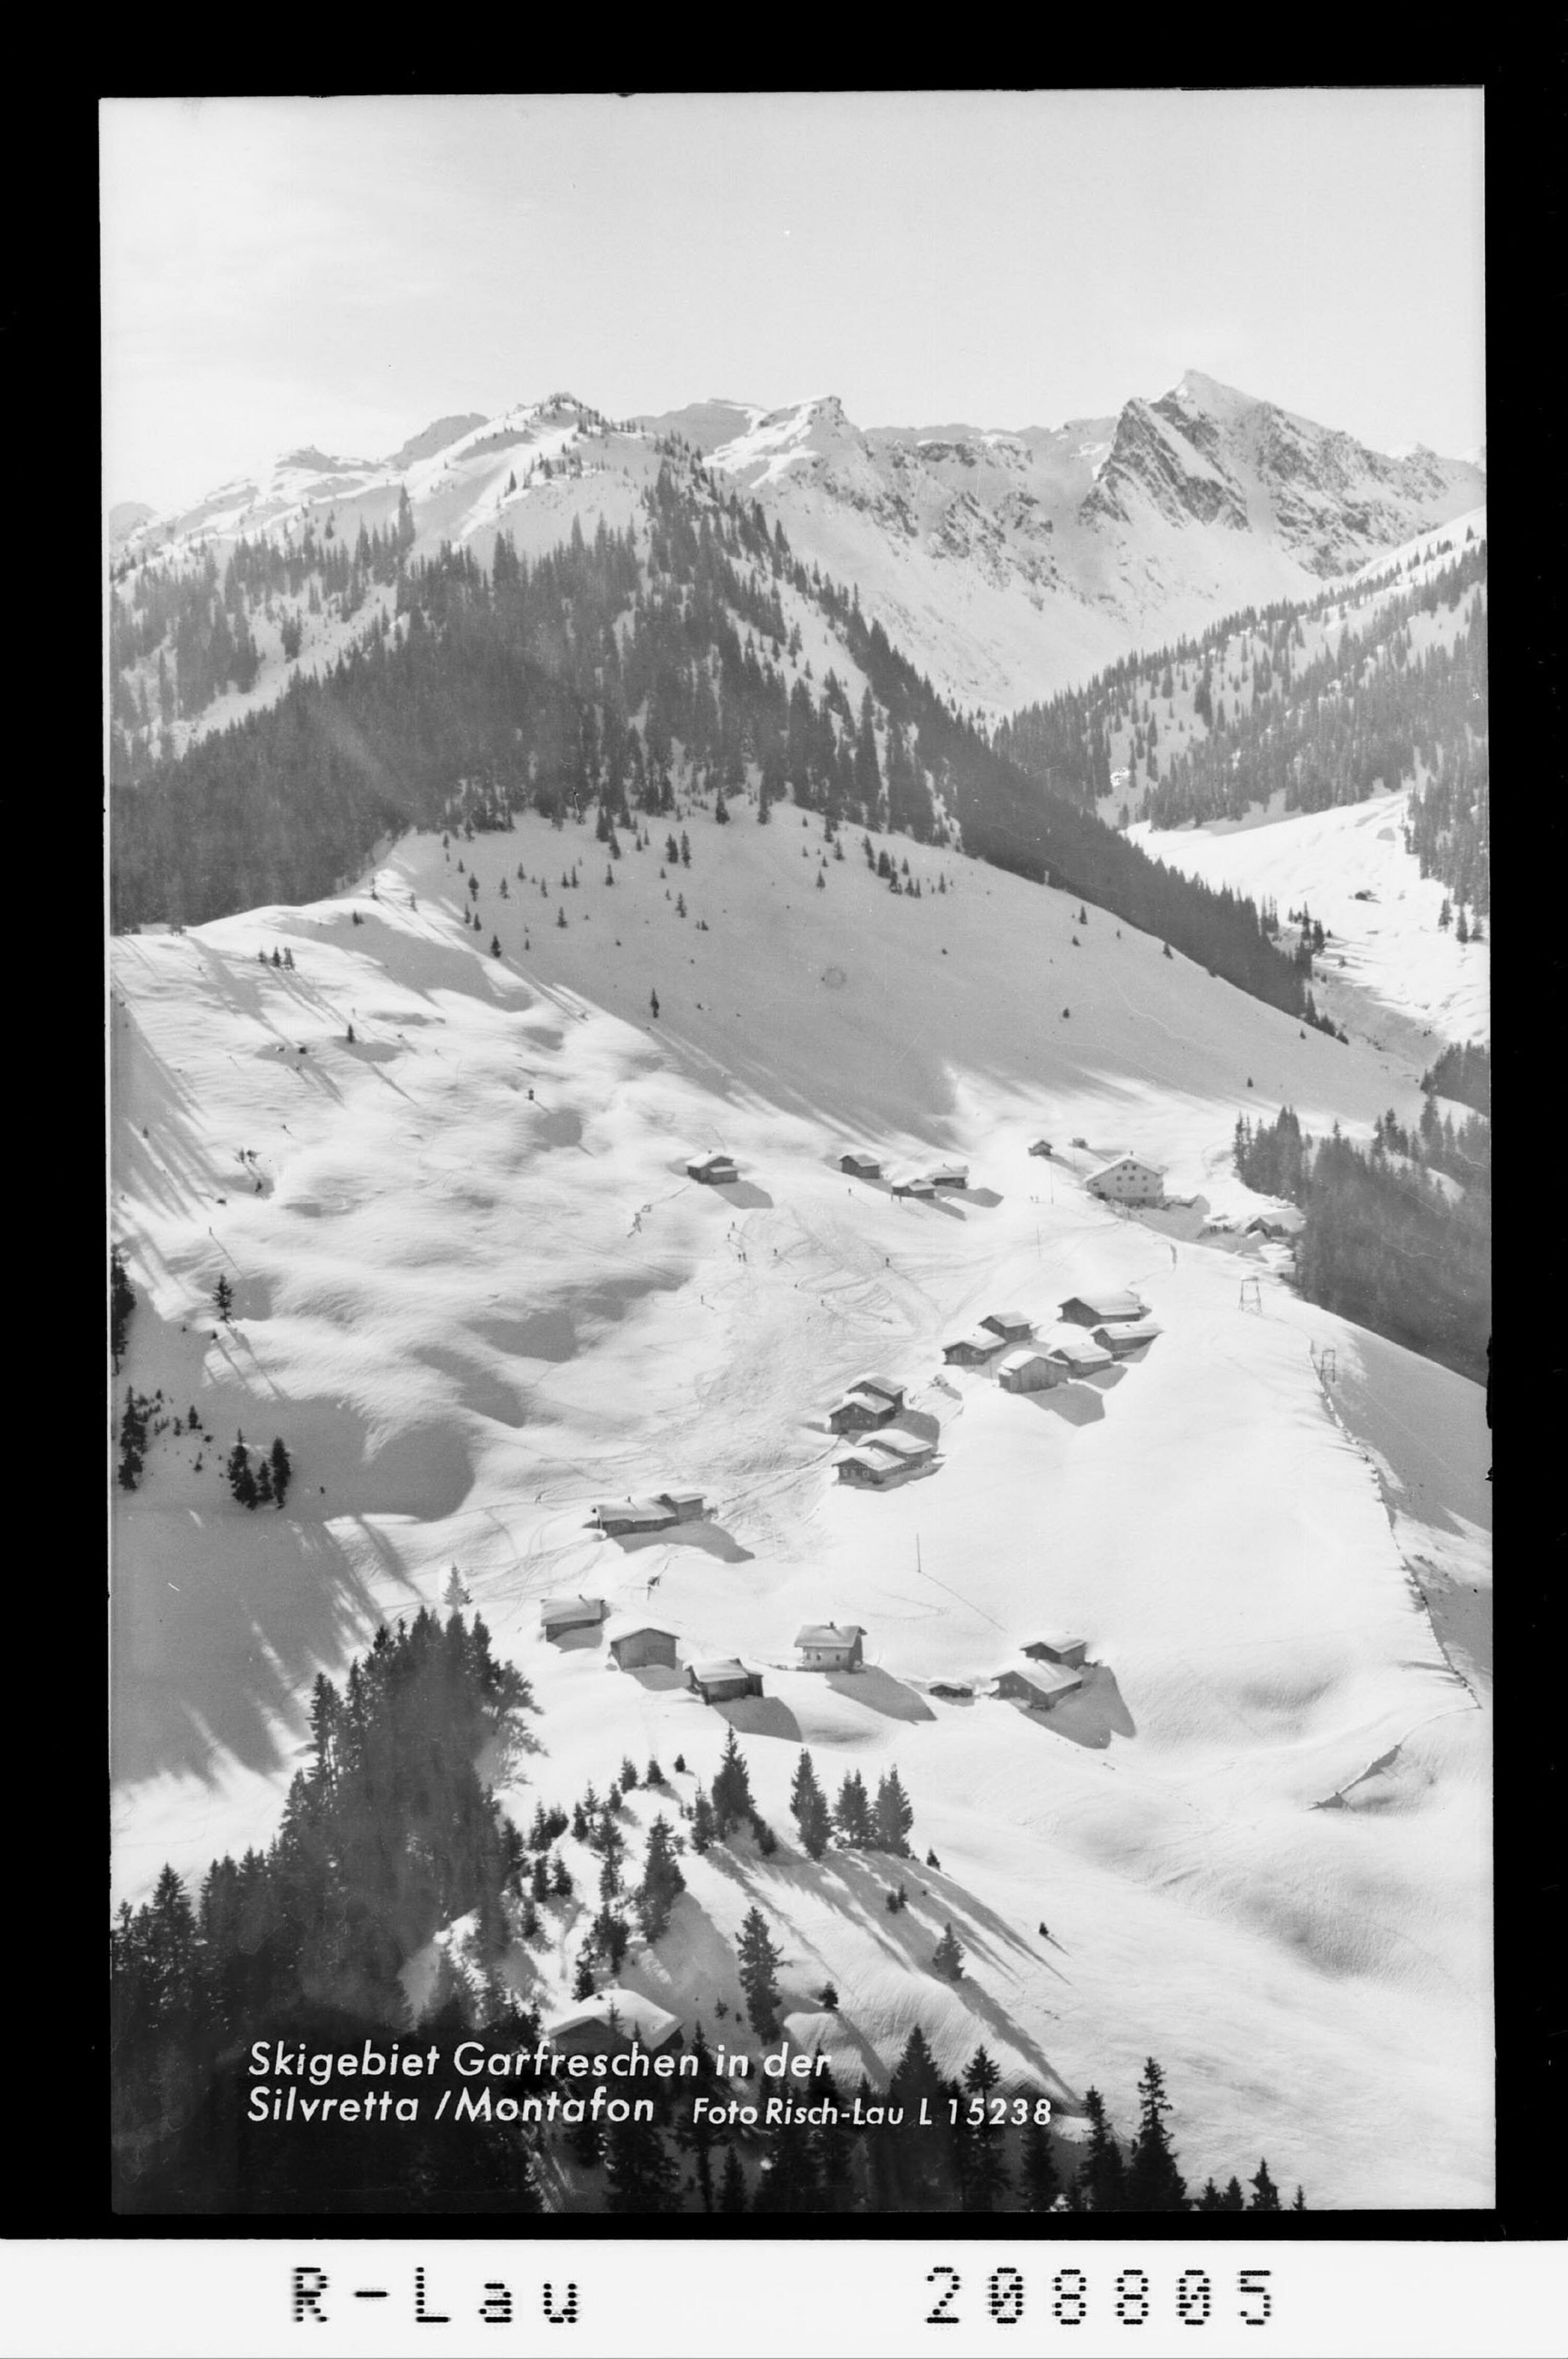 Skigebiet Garfreschen in der Silvretta / Montafon></div>


    <hr>
    <div class=